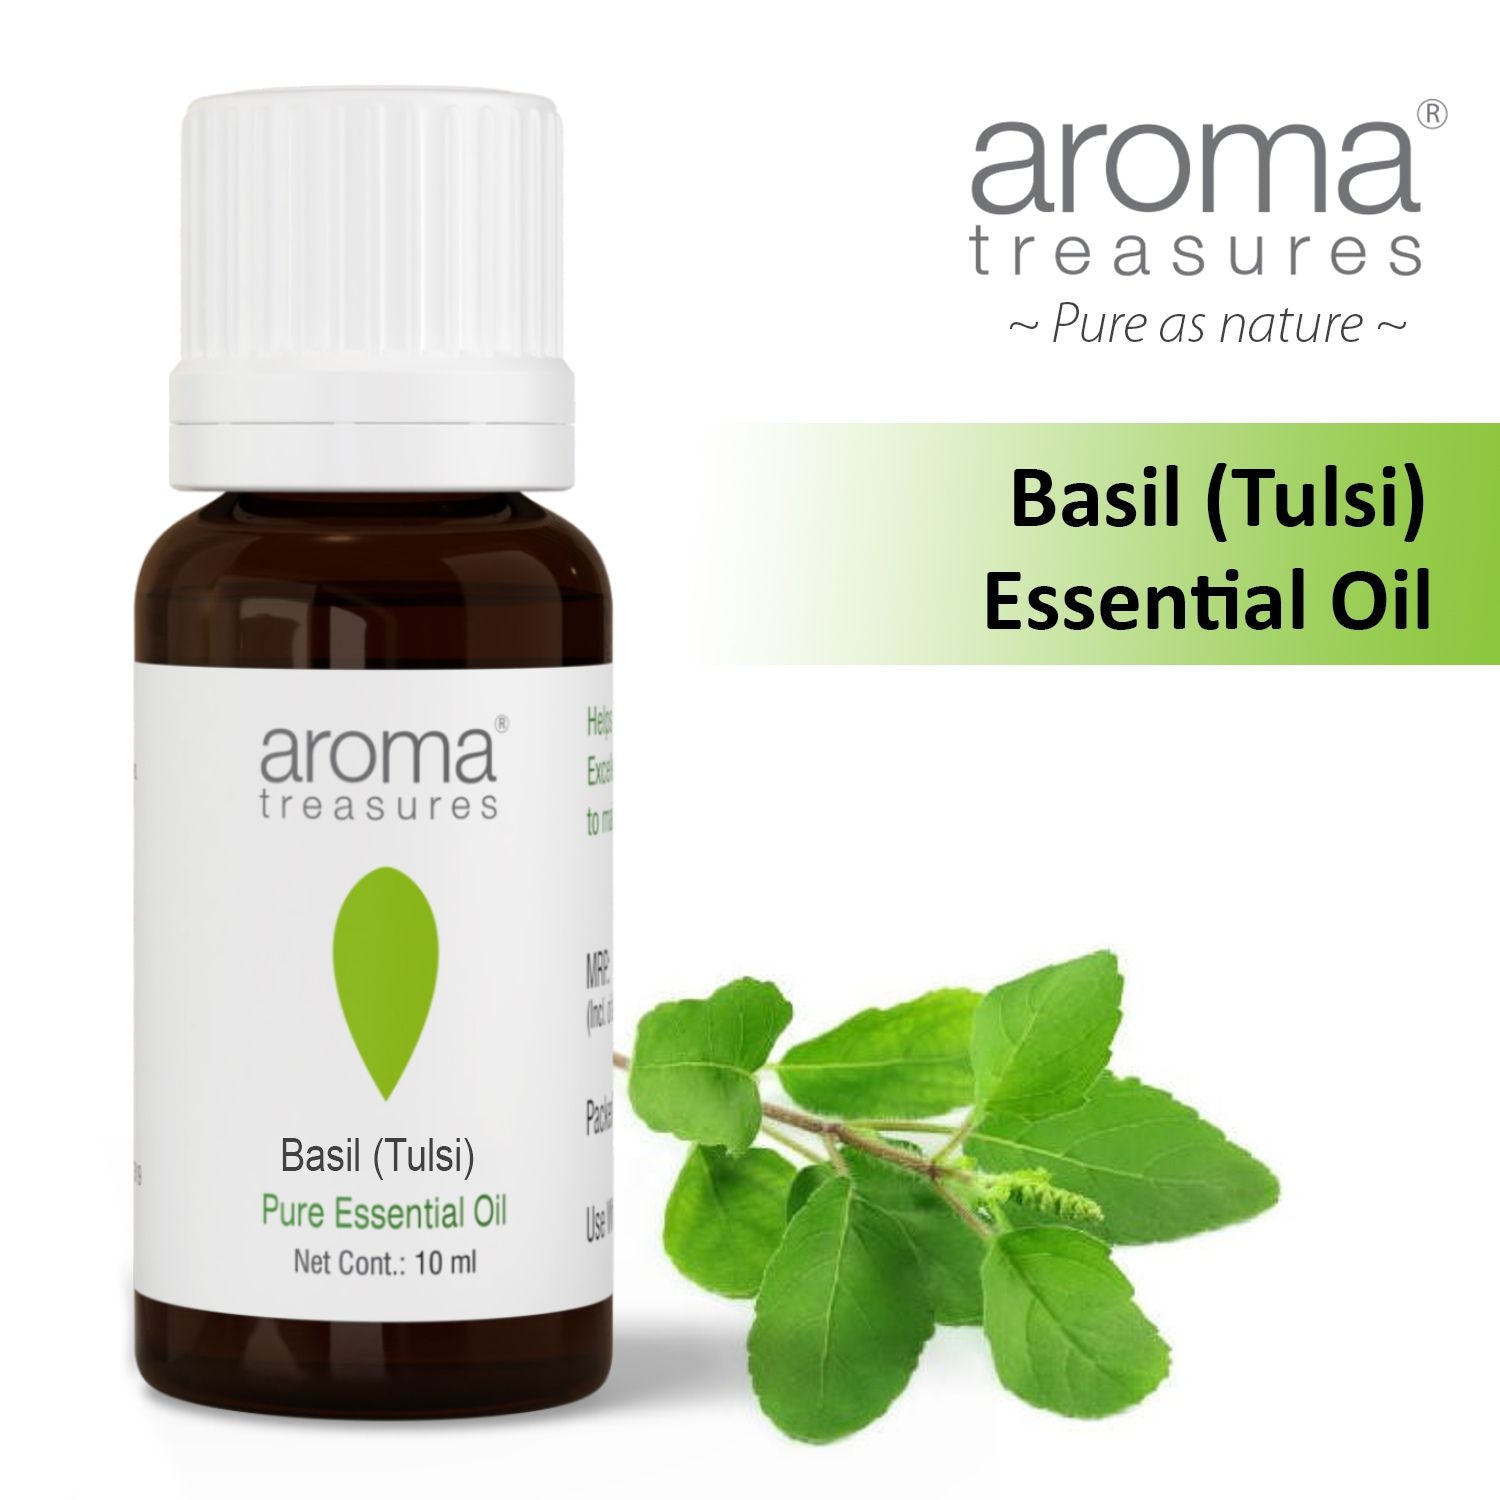 Aroma Treasures Basil (Tulsi) Essential Oil (10ml)